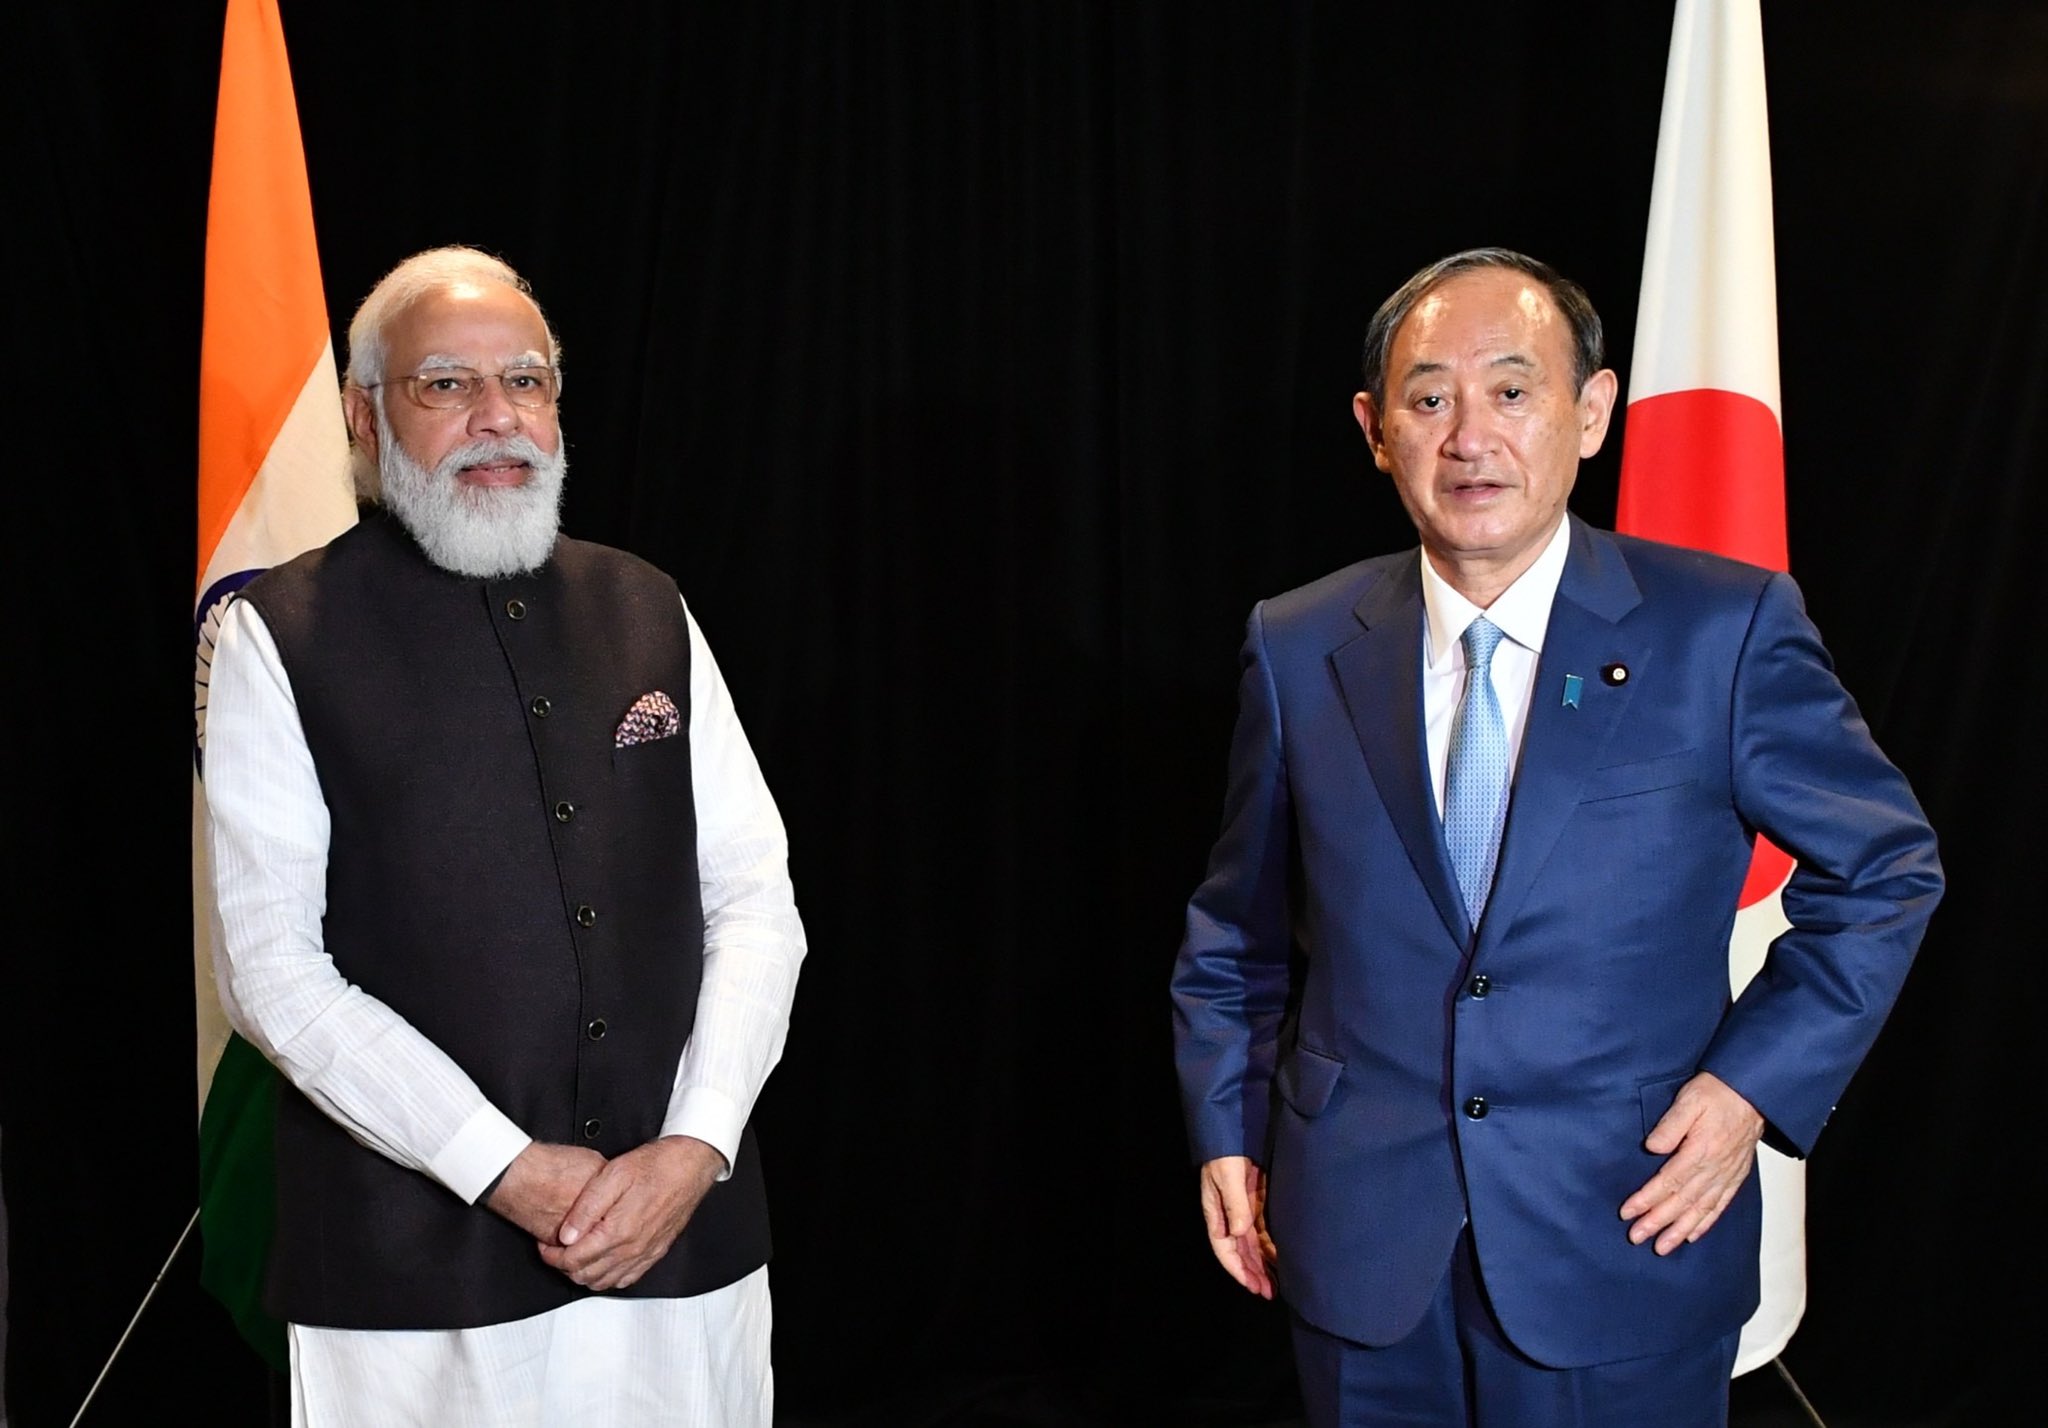 मोदी ने की जापानी प्रधानमंत्री से मुलाकात, दोनों ने स्वतंत्र हिन्द-प्रशांत क्षेत्र से प्रतिबद्धता दोहरायी